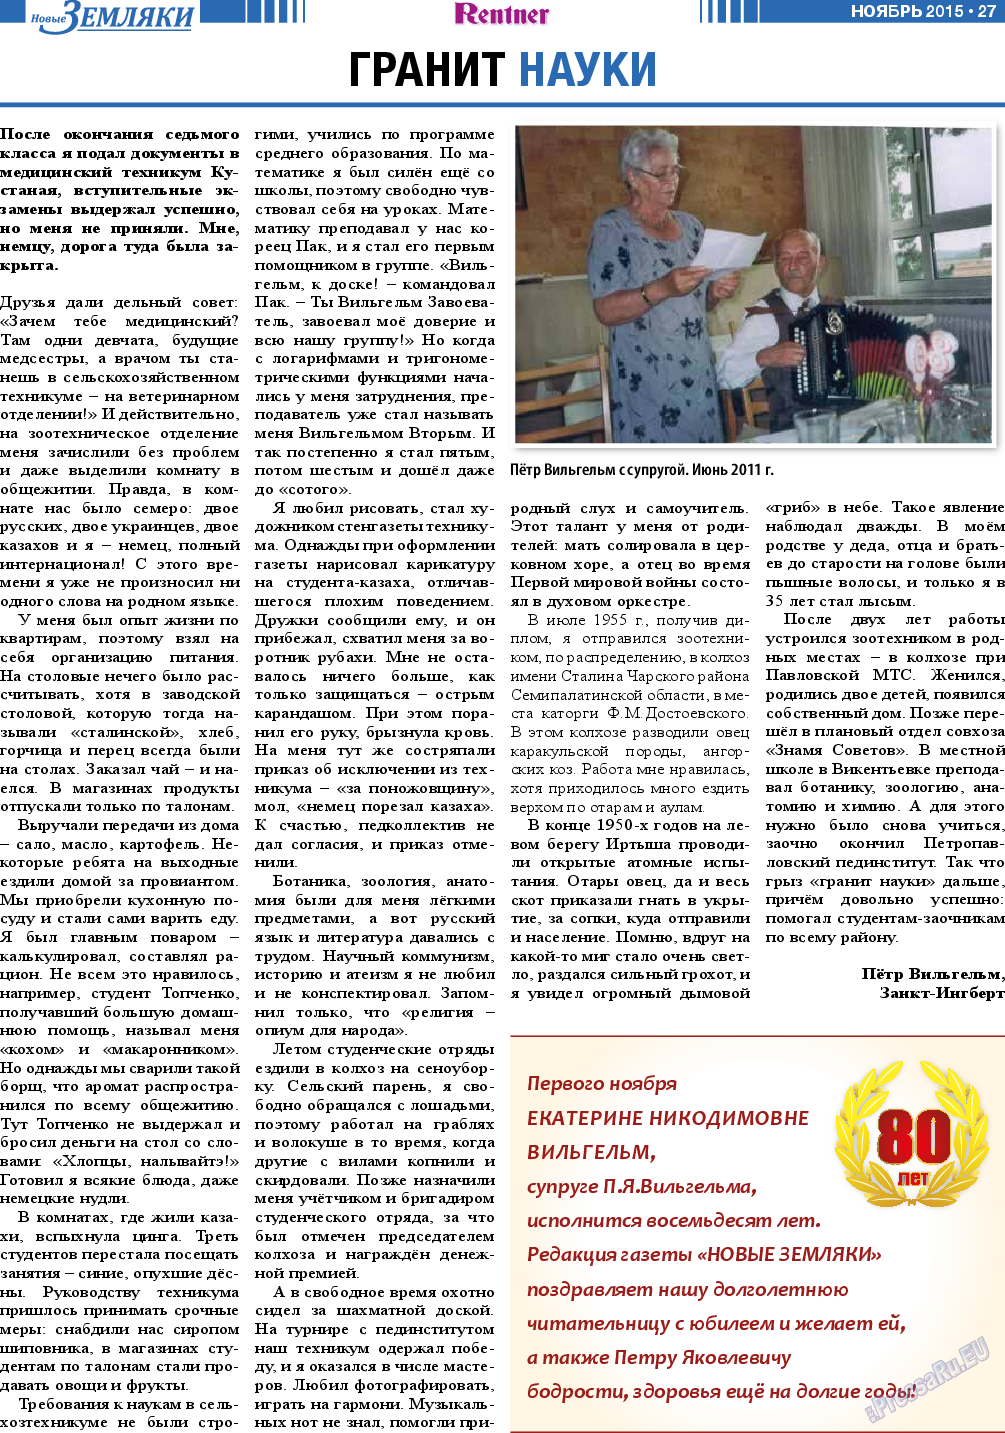 Новые Земляки, газета. 2015 №11 стр.27